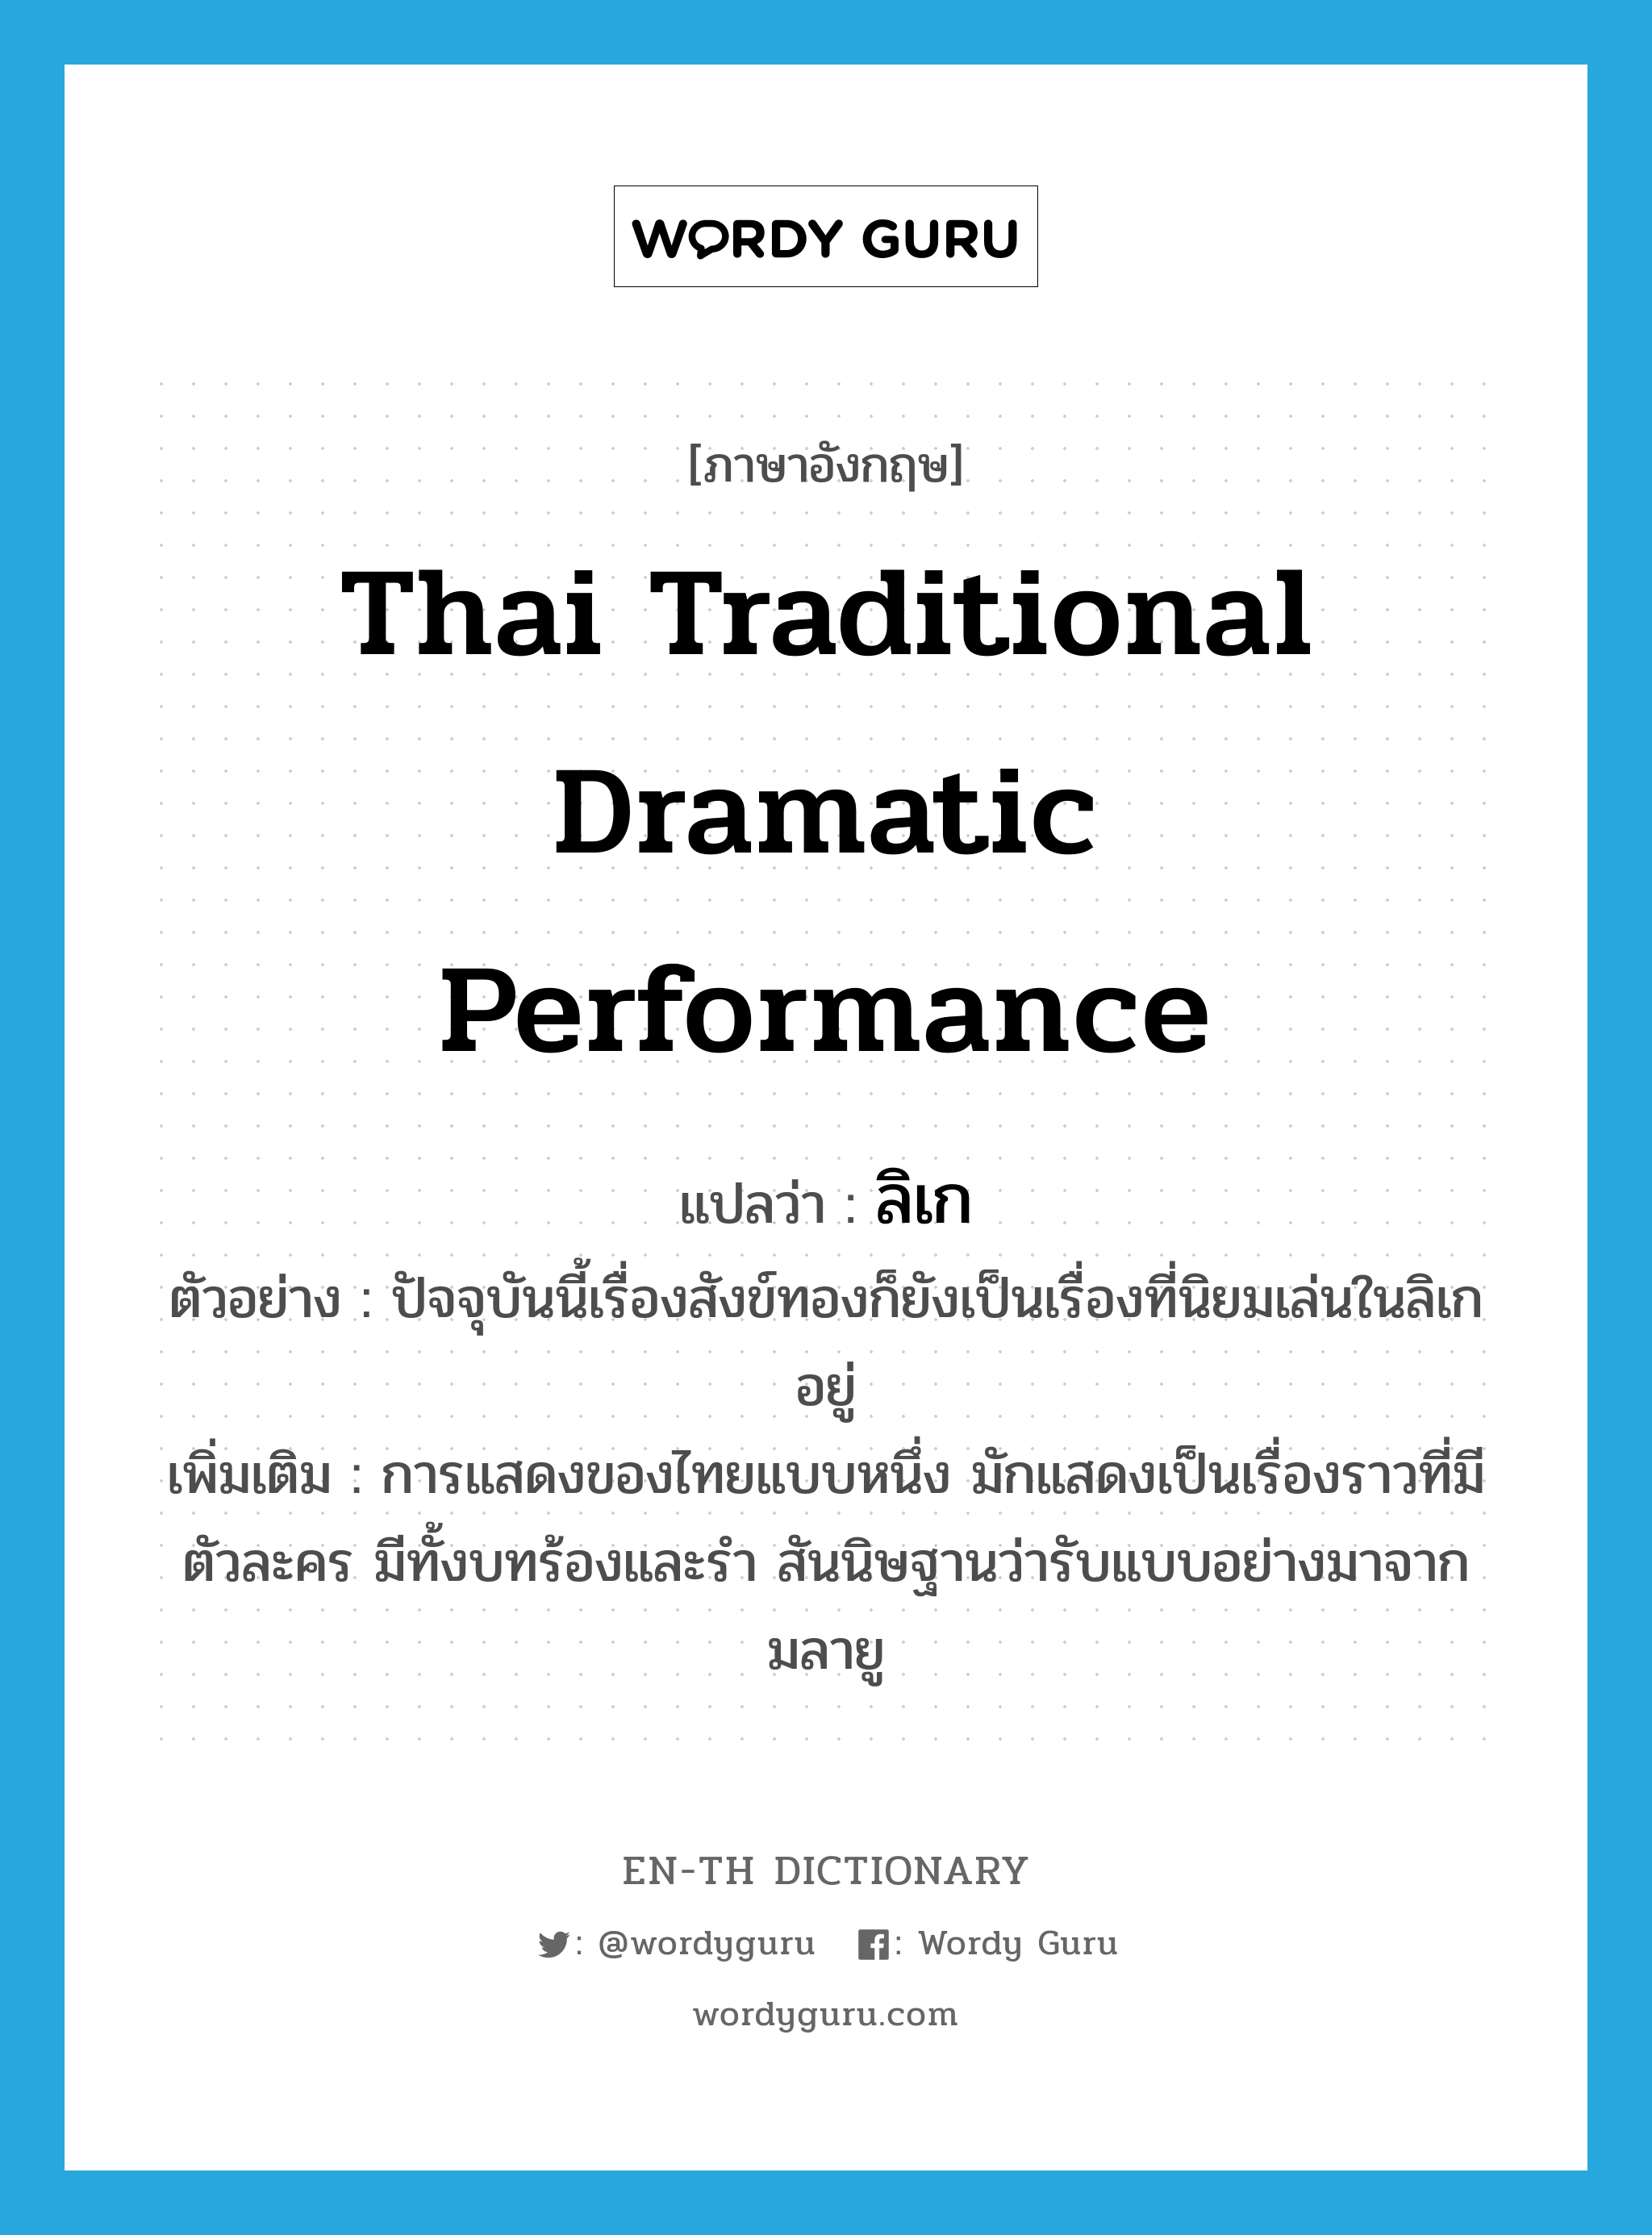 ลิเก ภาษาอังกฤษ?, คำศัพท์ภาษาอังกฤษ ลิเก แปลว่า Thai traditional dramatic performance ประเภท N ตัวอย่าง ปัจจุบันนี้เรื่องสังข์ทองก็ยังเป็นเรื่องที่นิยมเล่นในลิเกอยู่ เพิ่มเติม การแสดงของไทยแบบหนึ่ง มักแสดงเป็นเรื่องราวที่มีตัวละคร มีทั้งบทร้องและรำ สันนิษฐานว่ารับแบบอย่างมาจากมลายู หมวด N